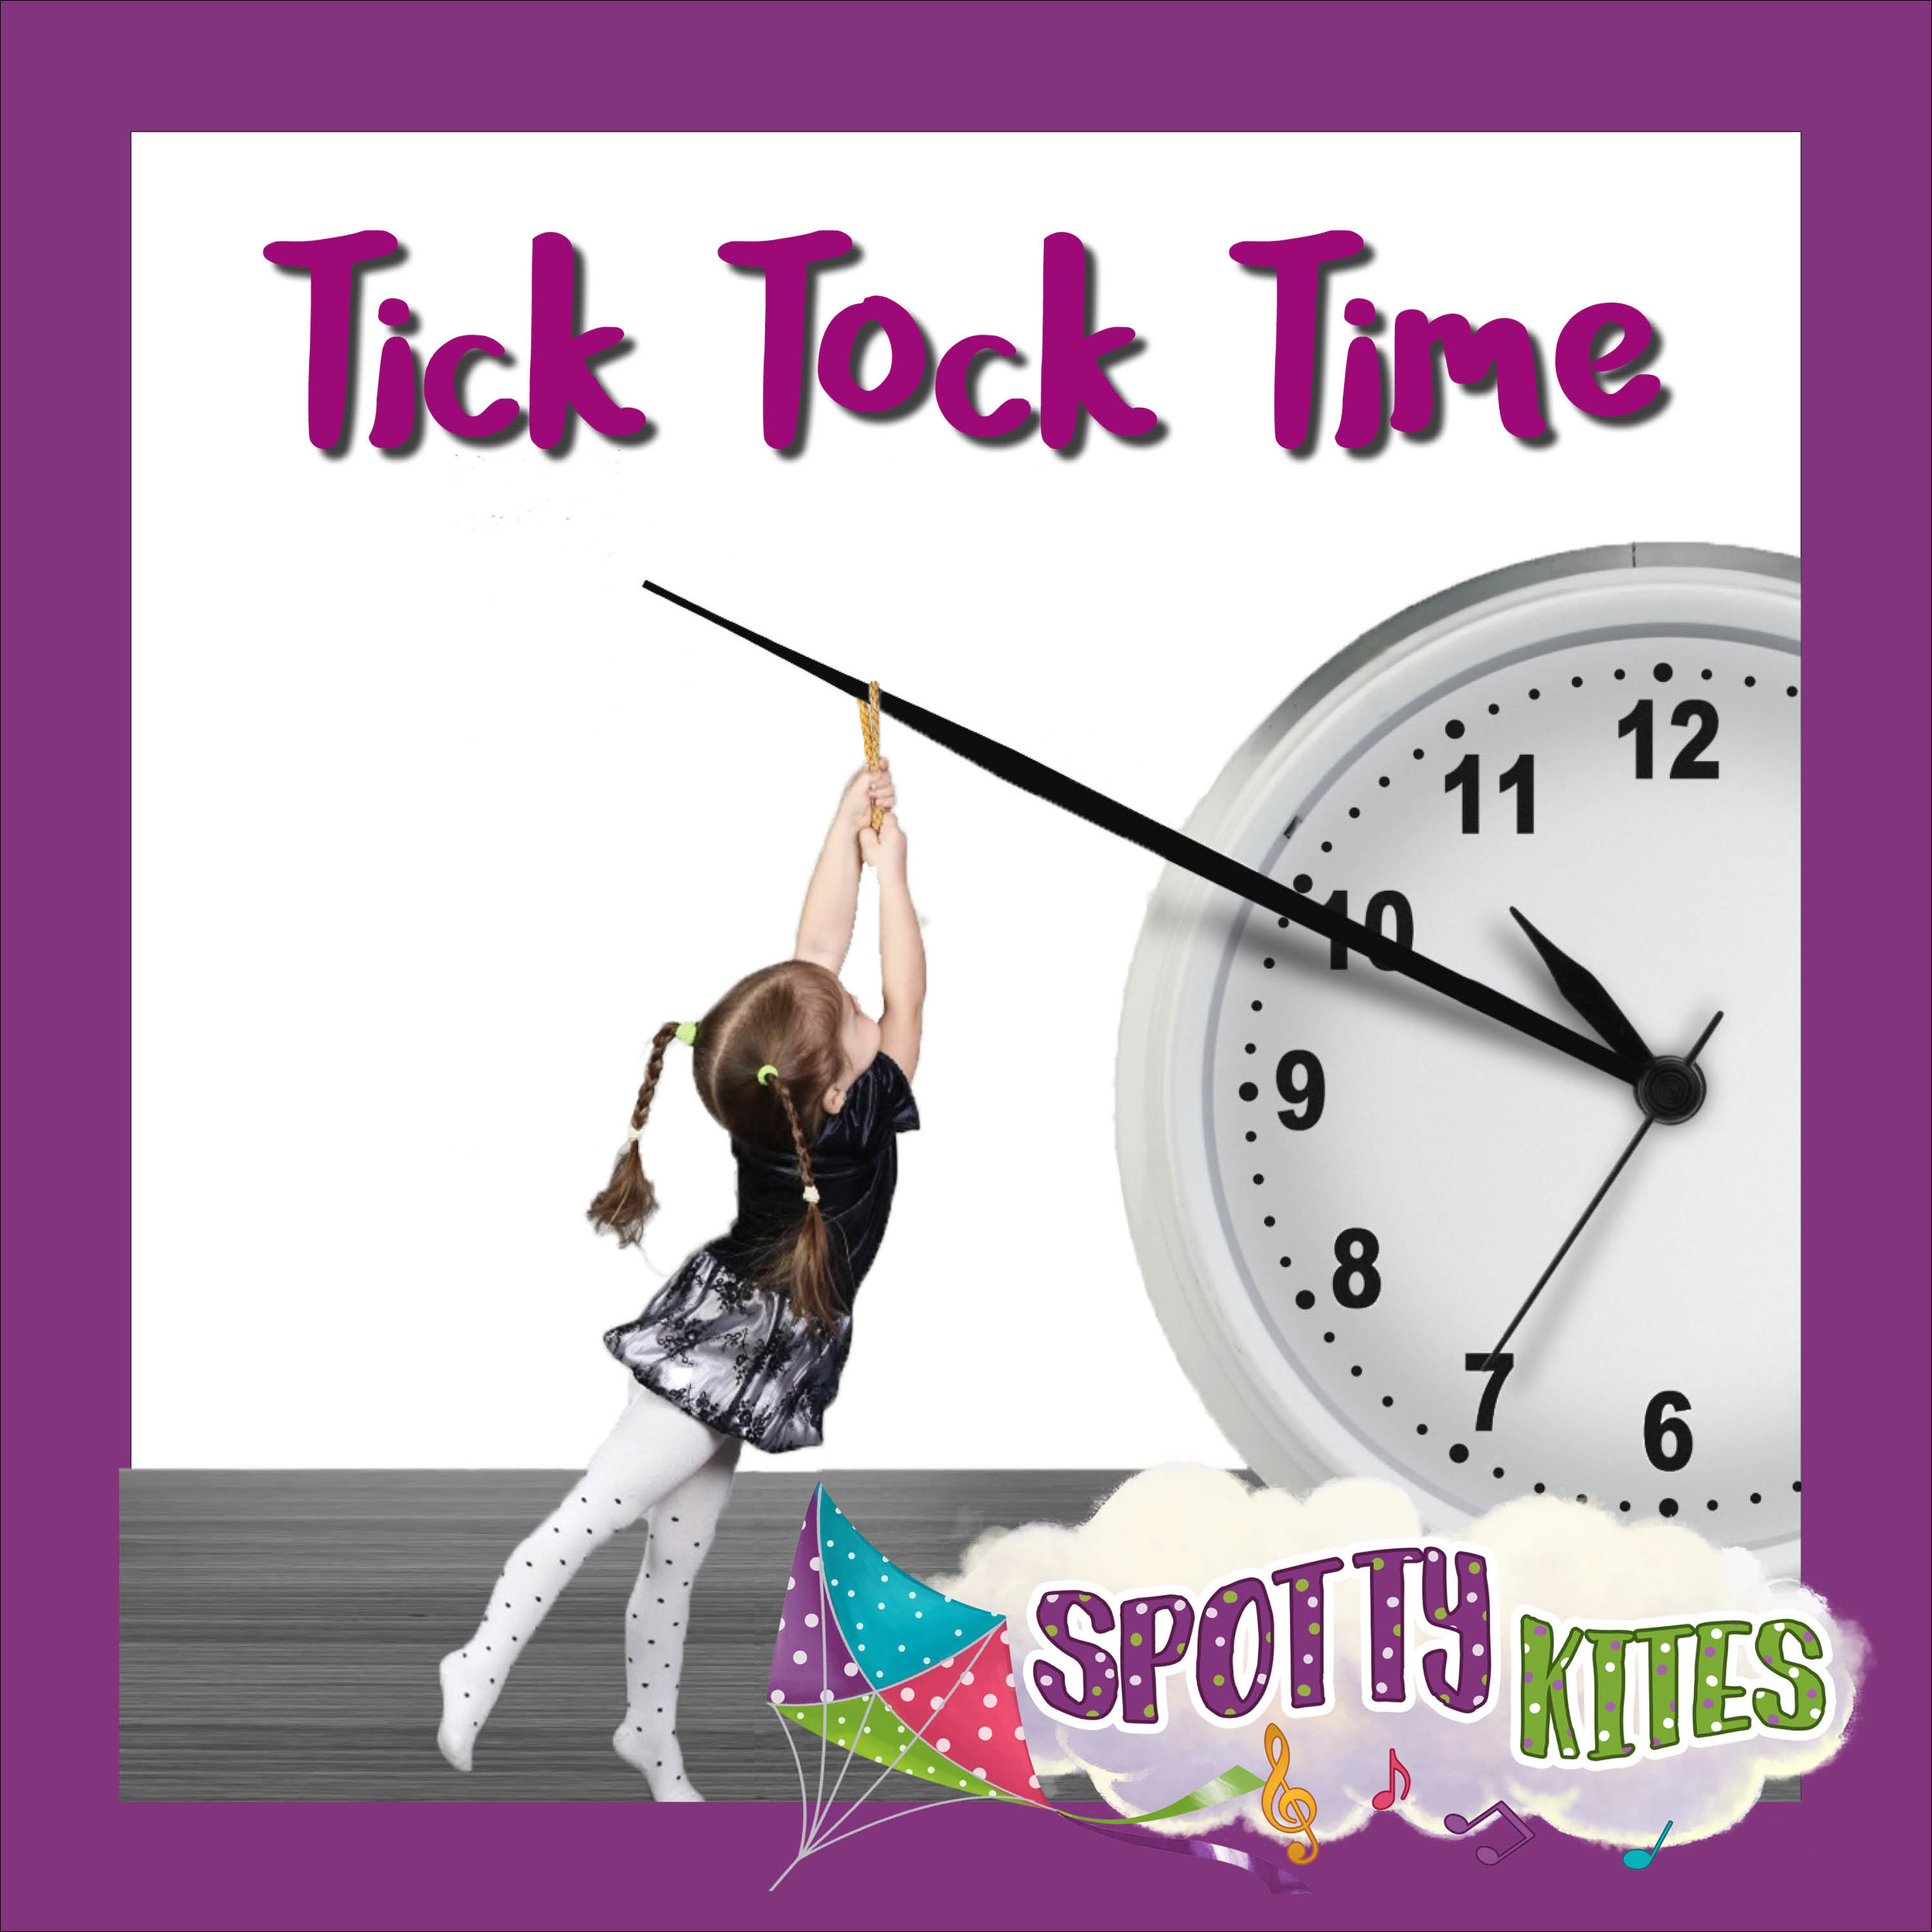 Spotty Kites Time.jpg